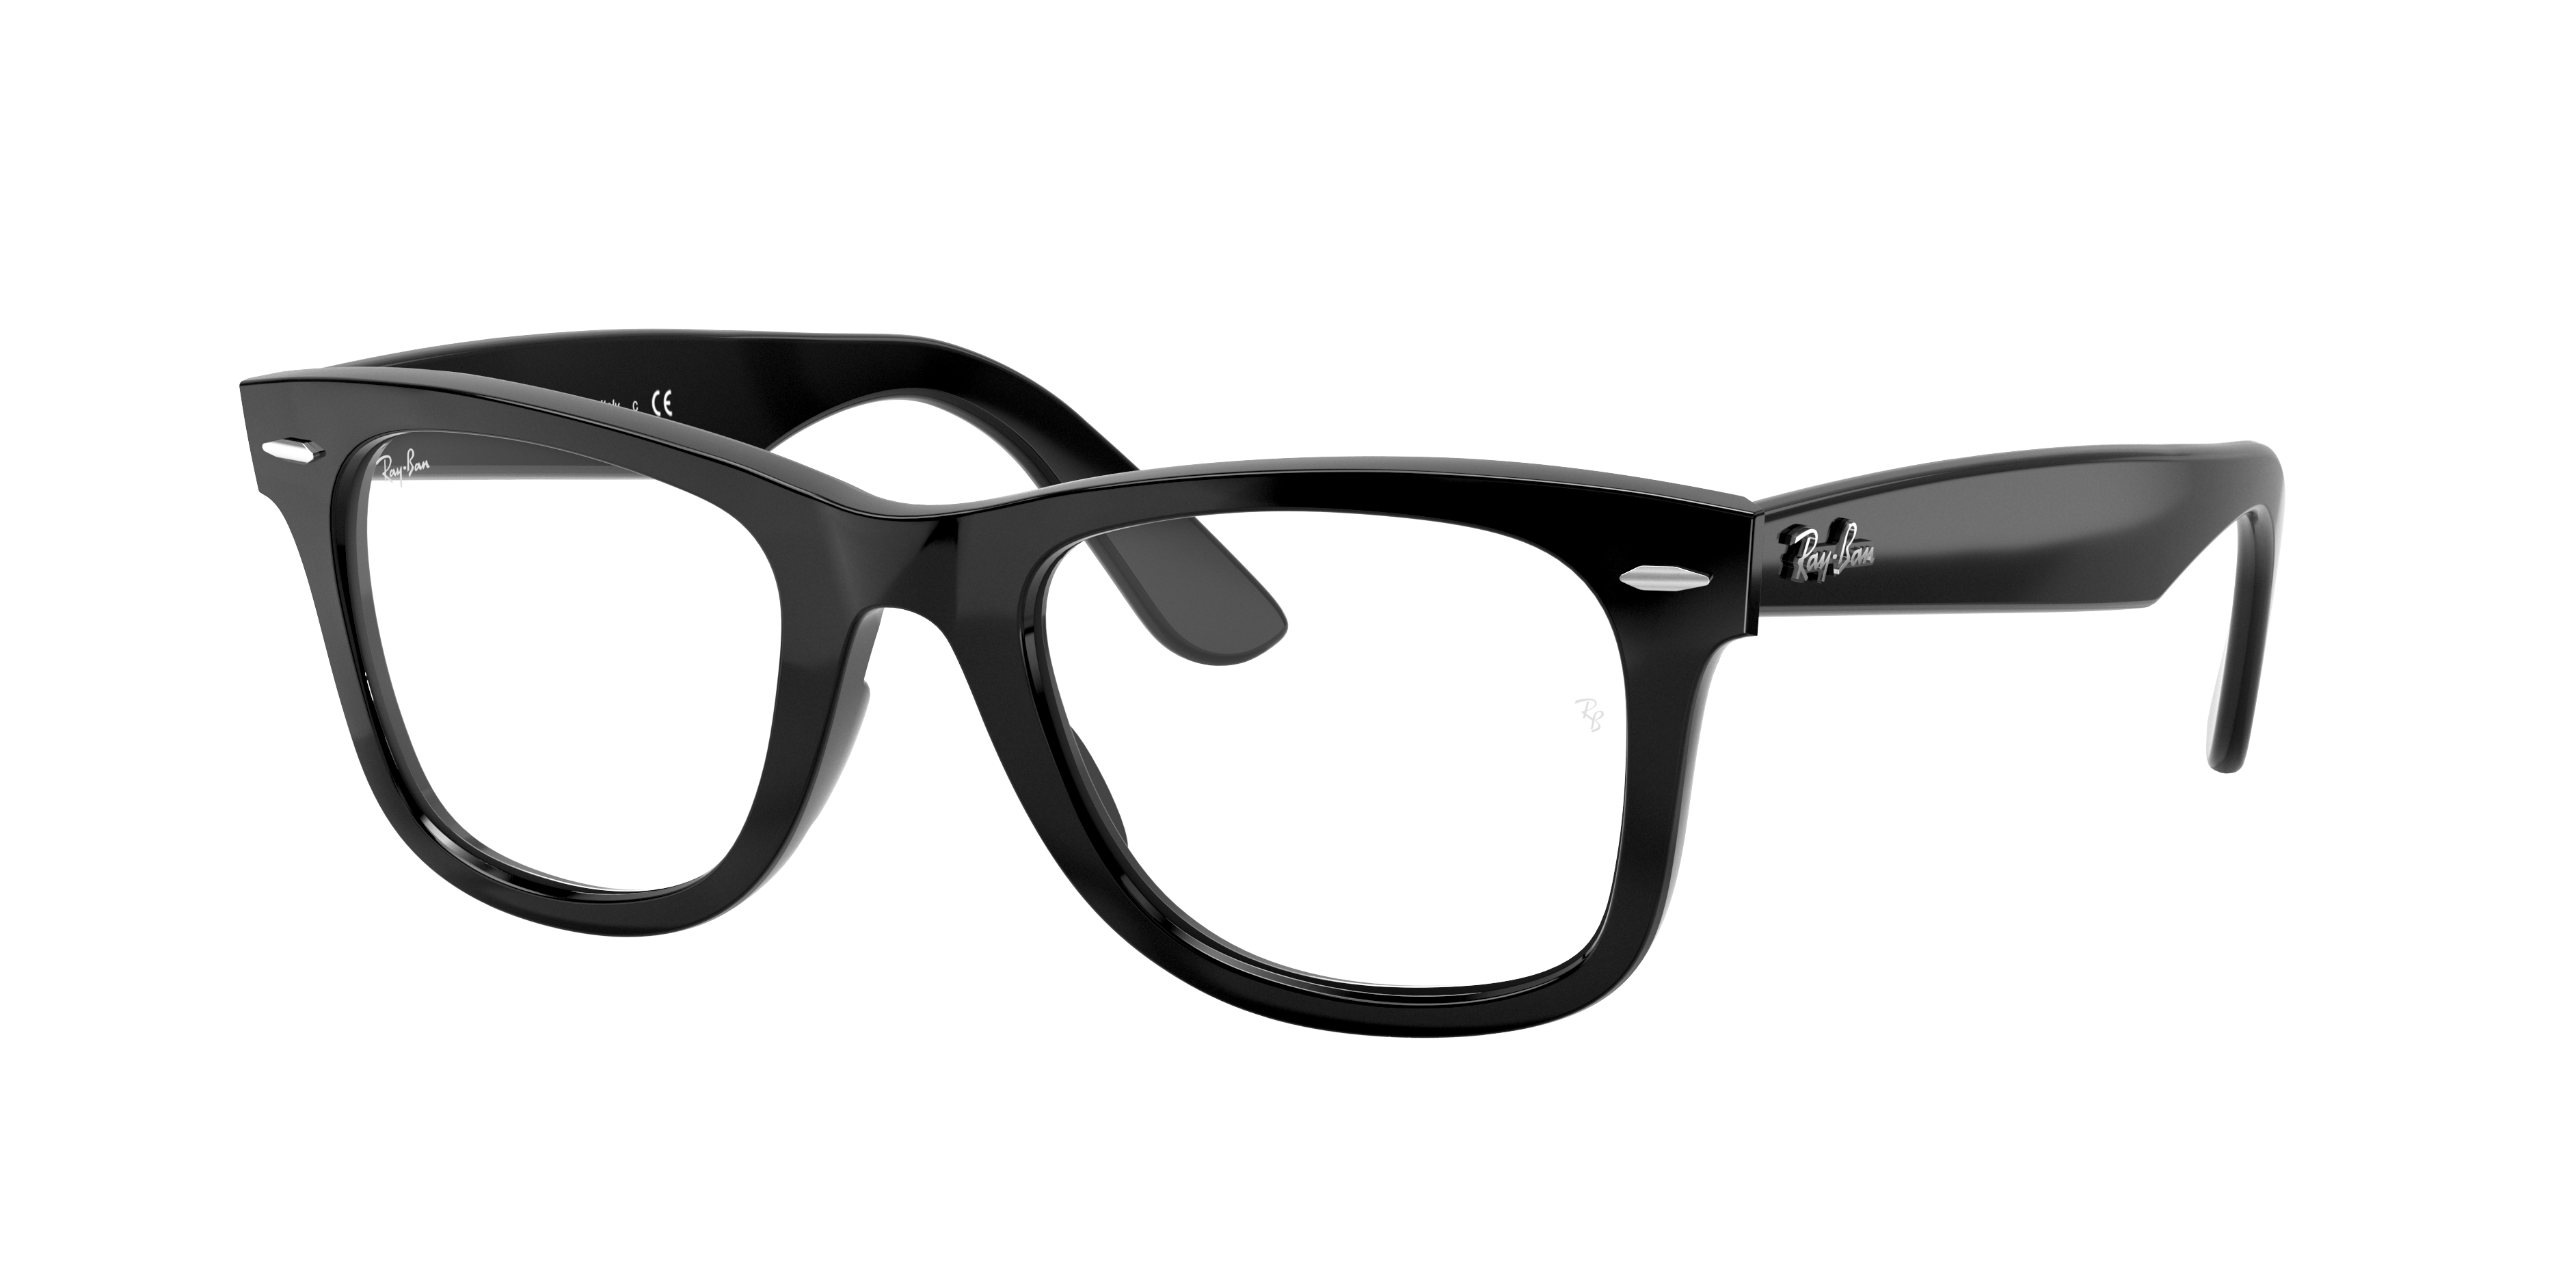 Ray-Ban eyeglasses Wayfarer Ease Optics 